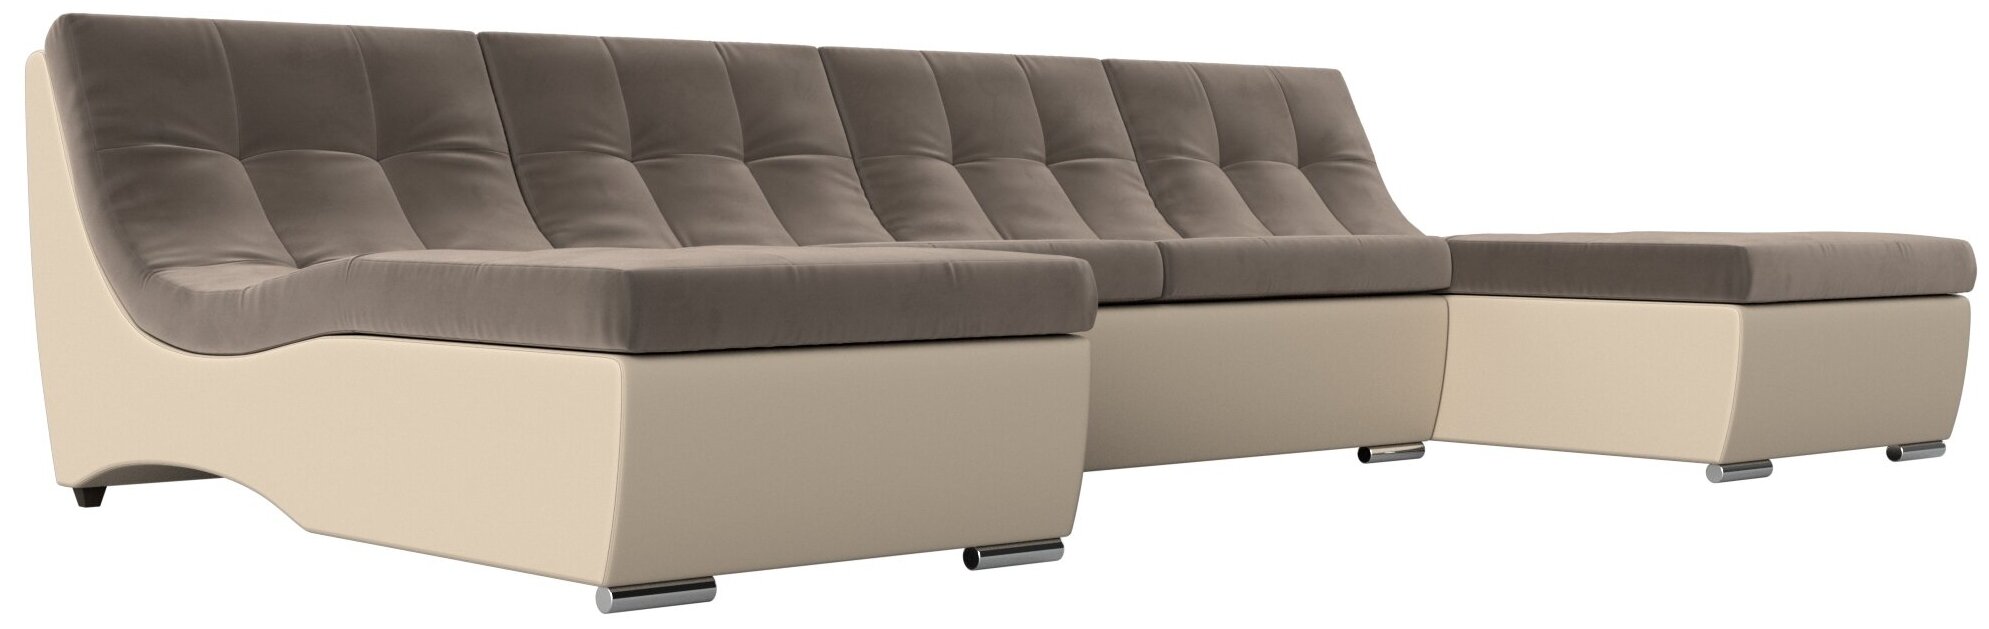 П-образный модульный диван Монреаль, Велюр, Модель 111548